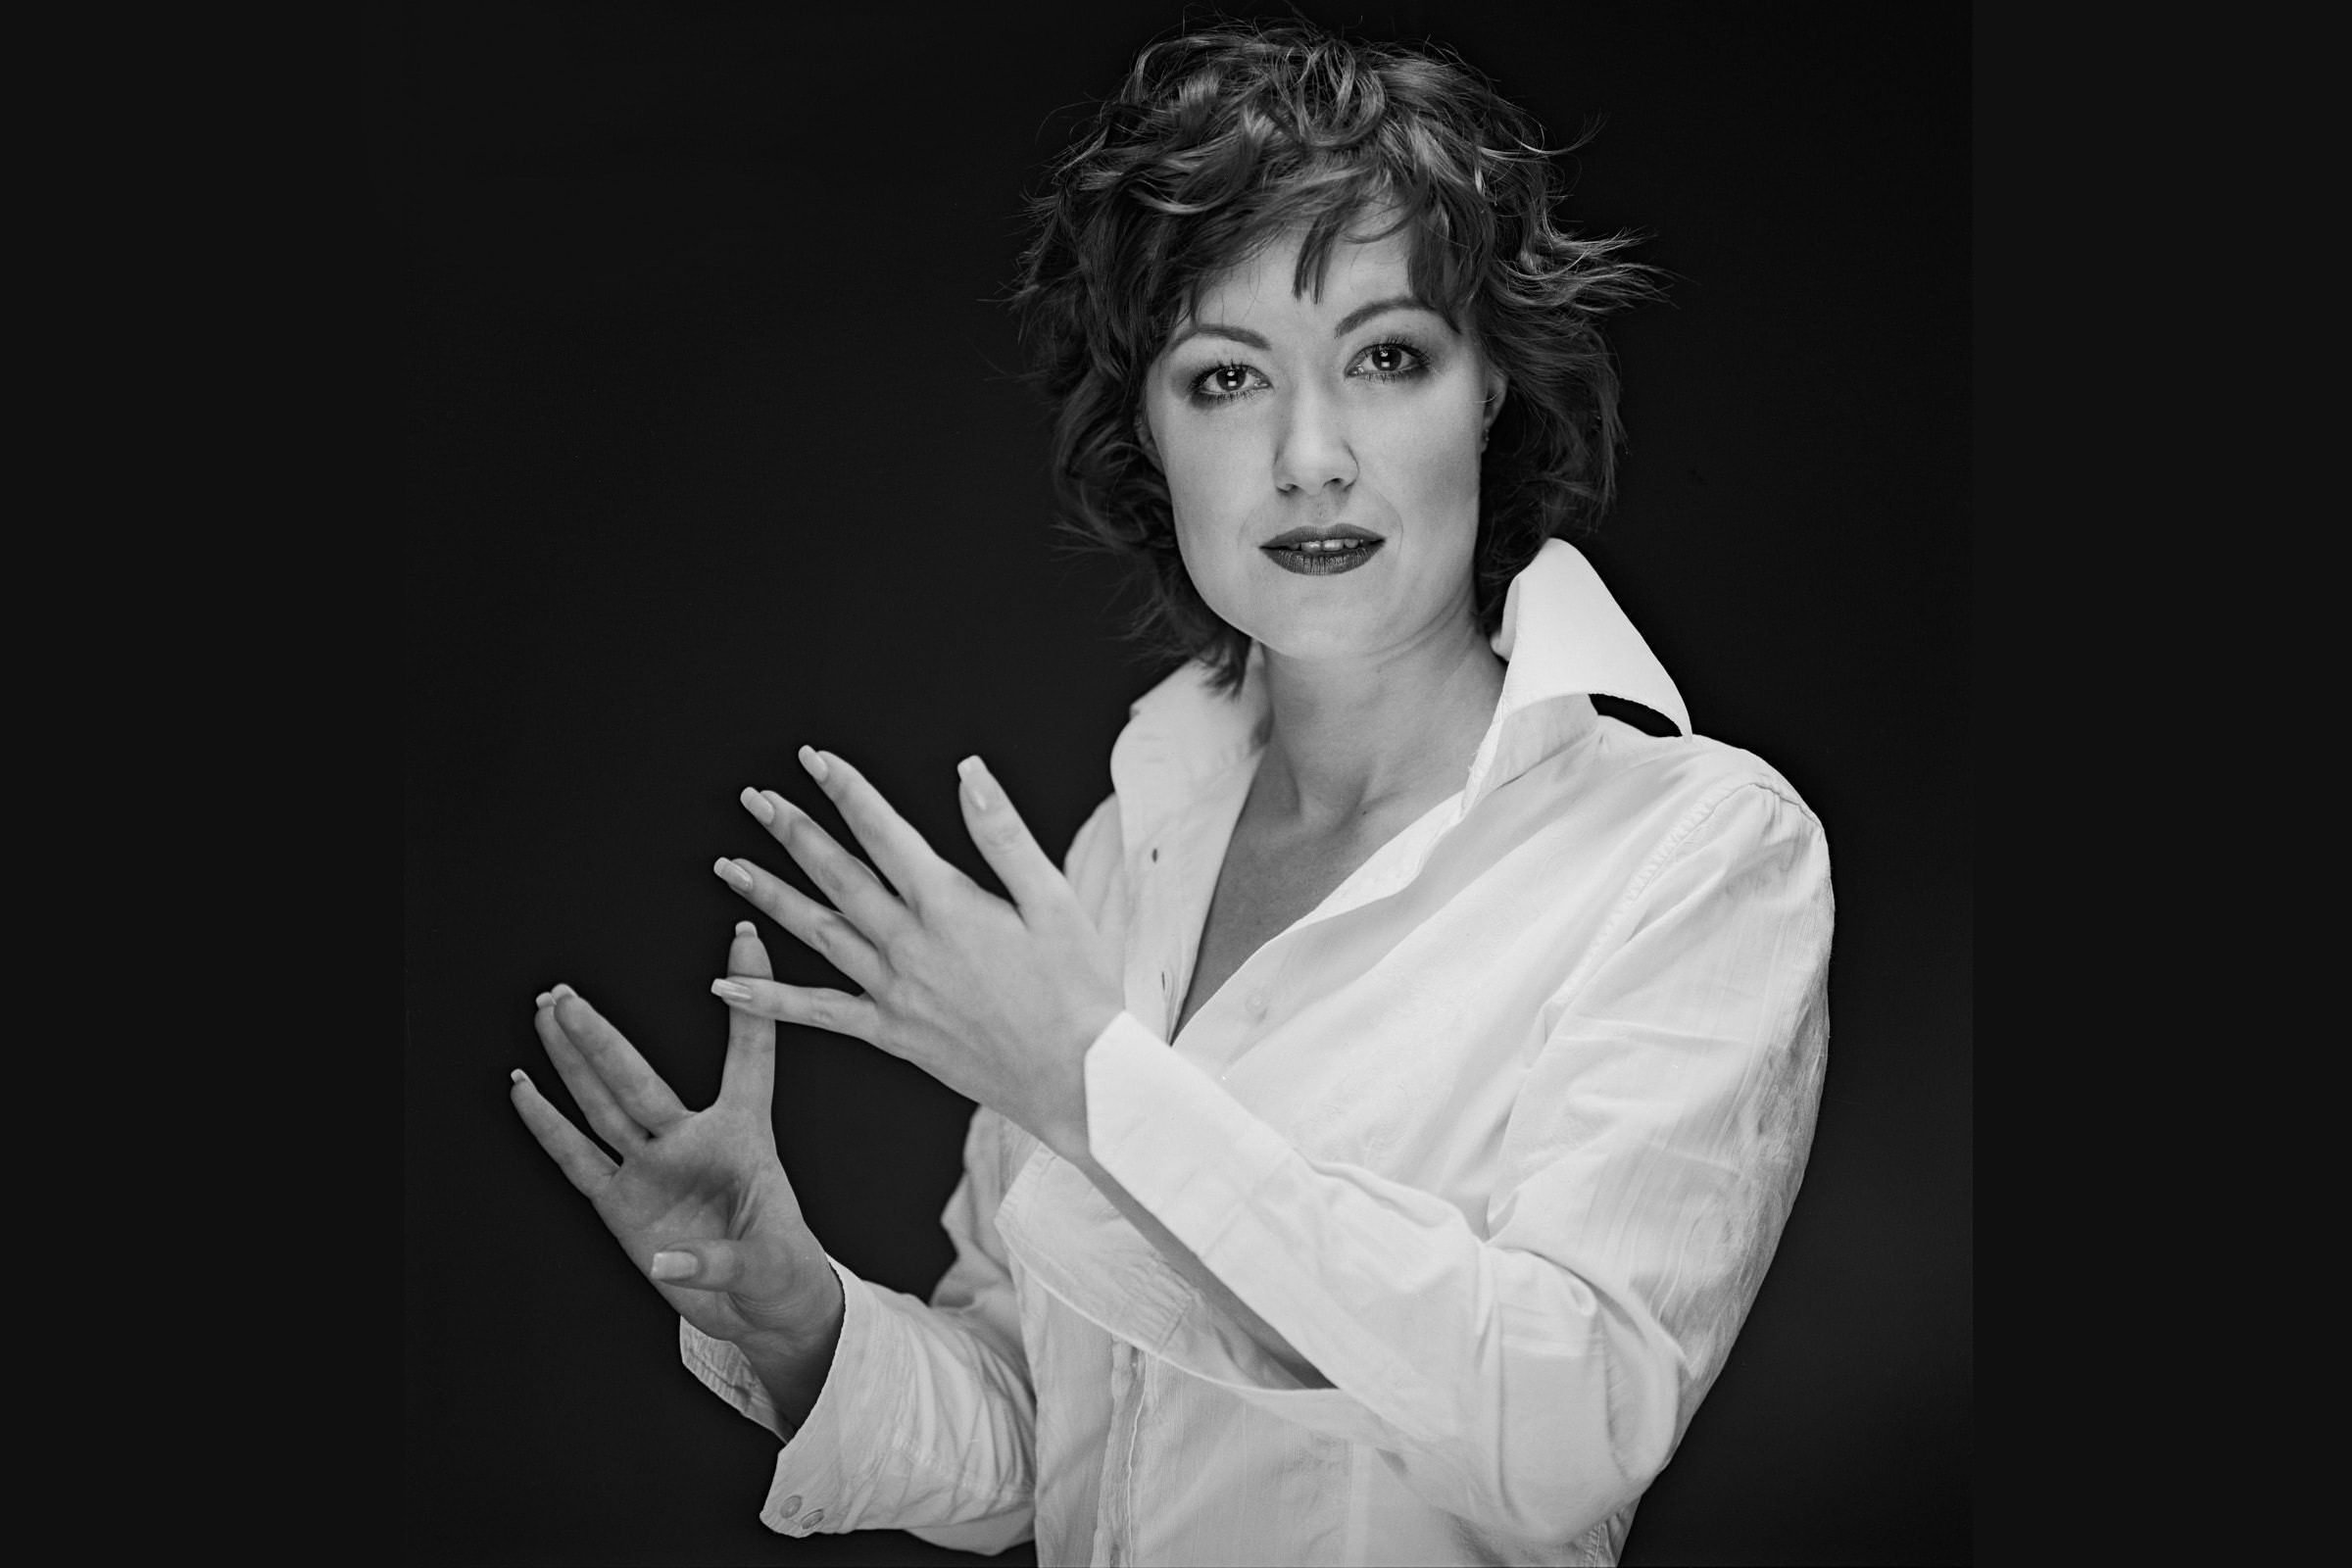 Чёрно-белый студийный снимок женщины и бизнес-леди для резюме и презентации в профилях социальных сетей